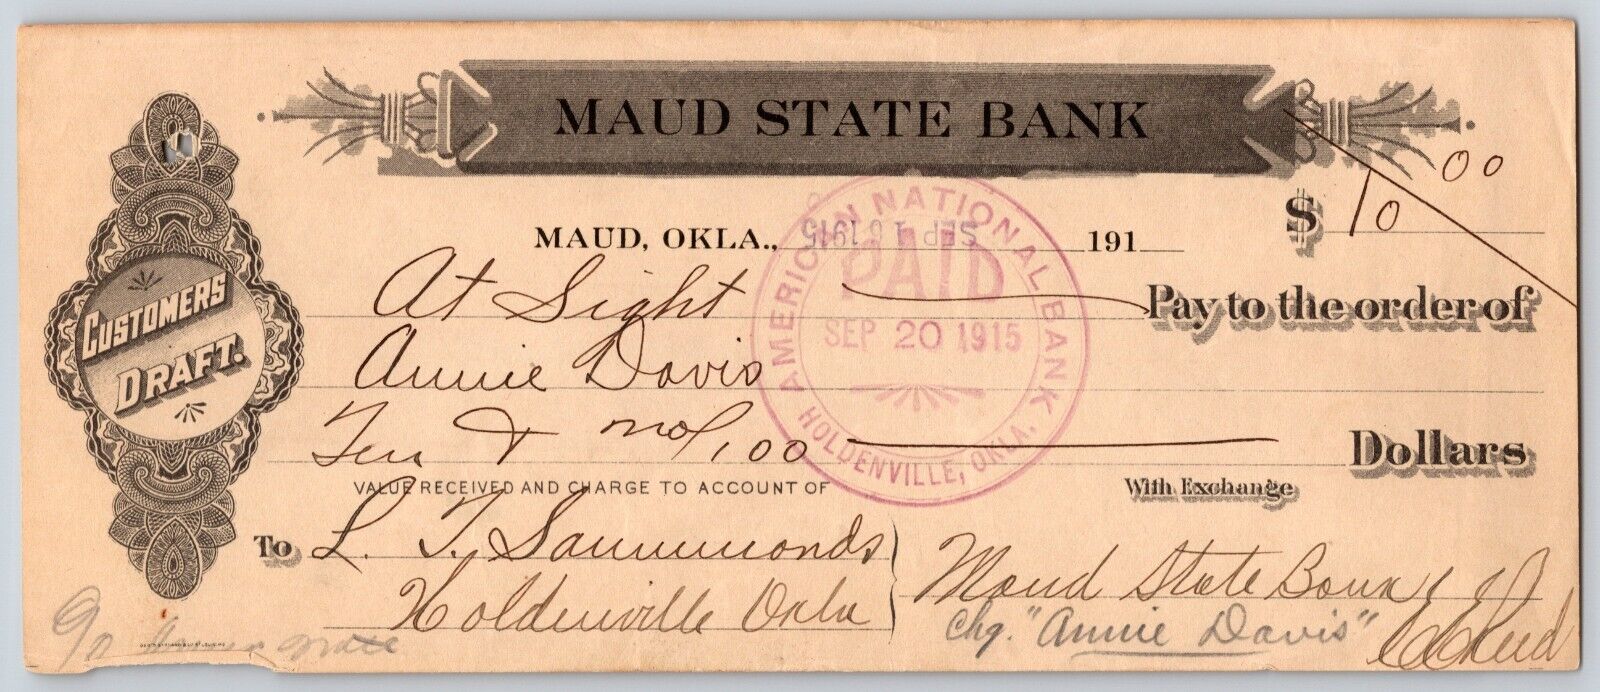 Maud, Oklahoma 1915 $10 Maud State Bank Check - Scarce